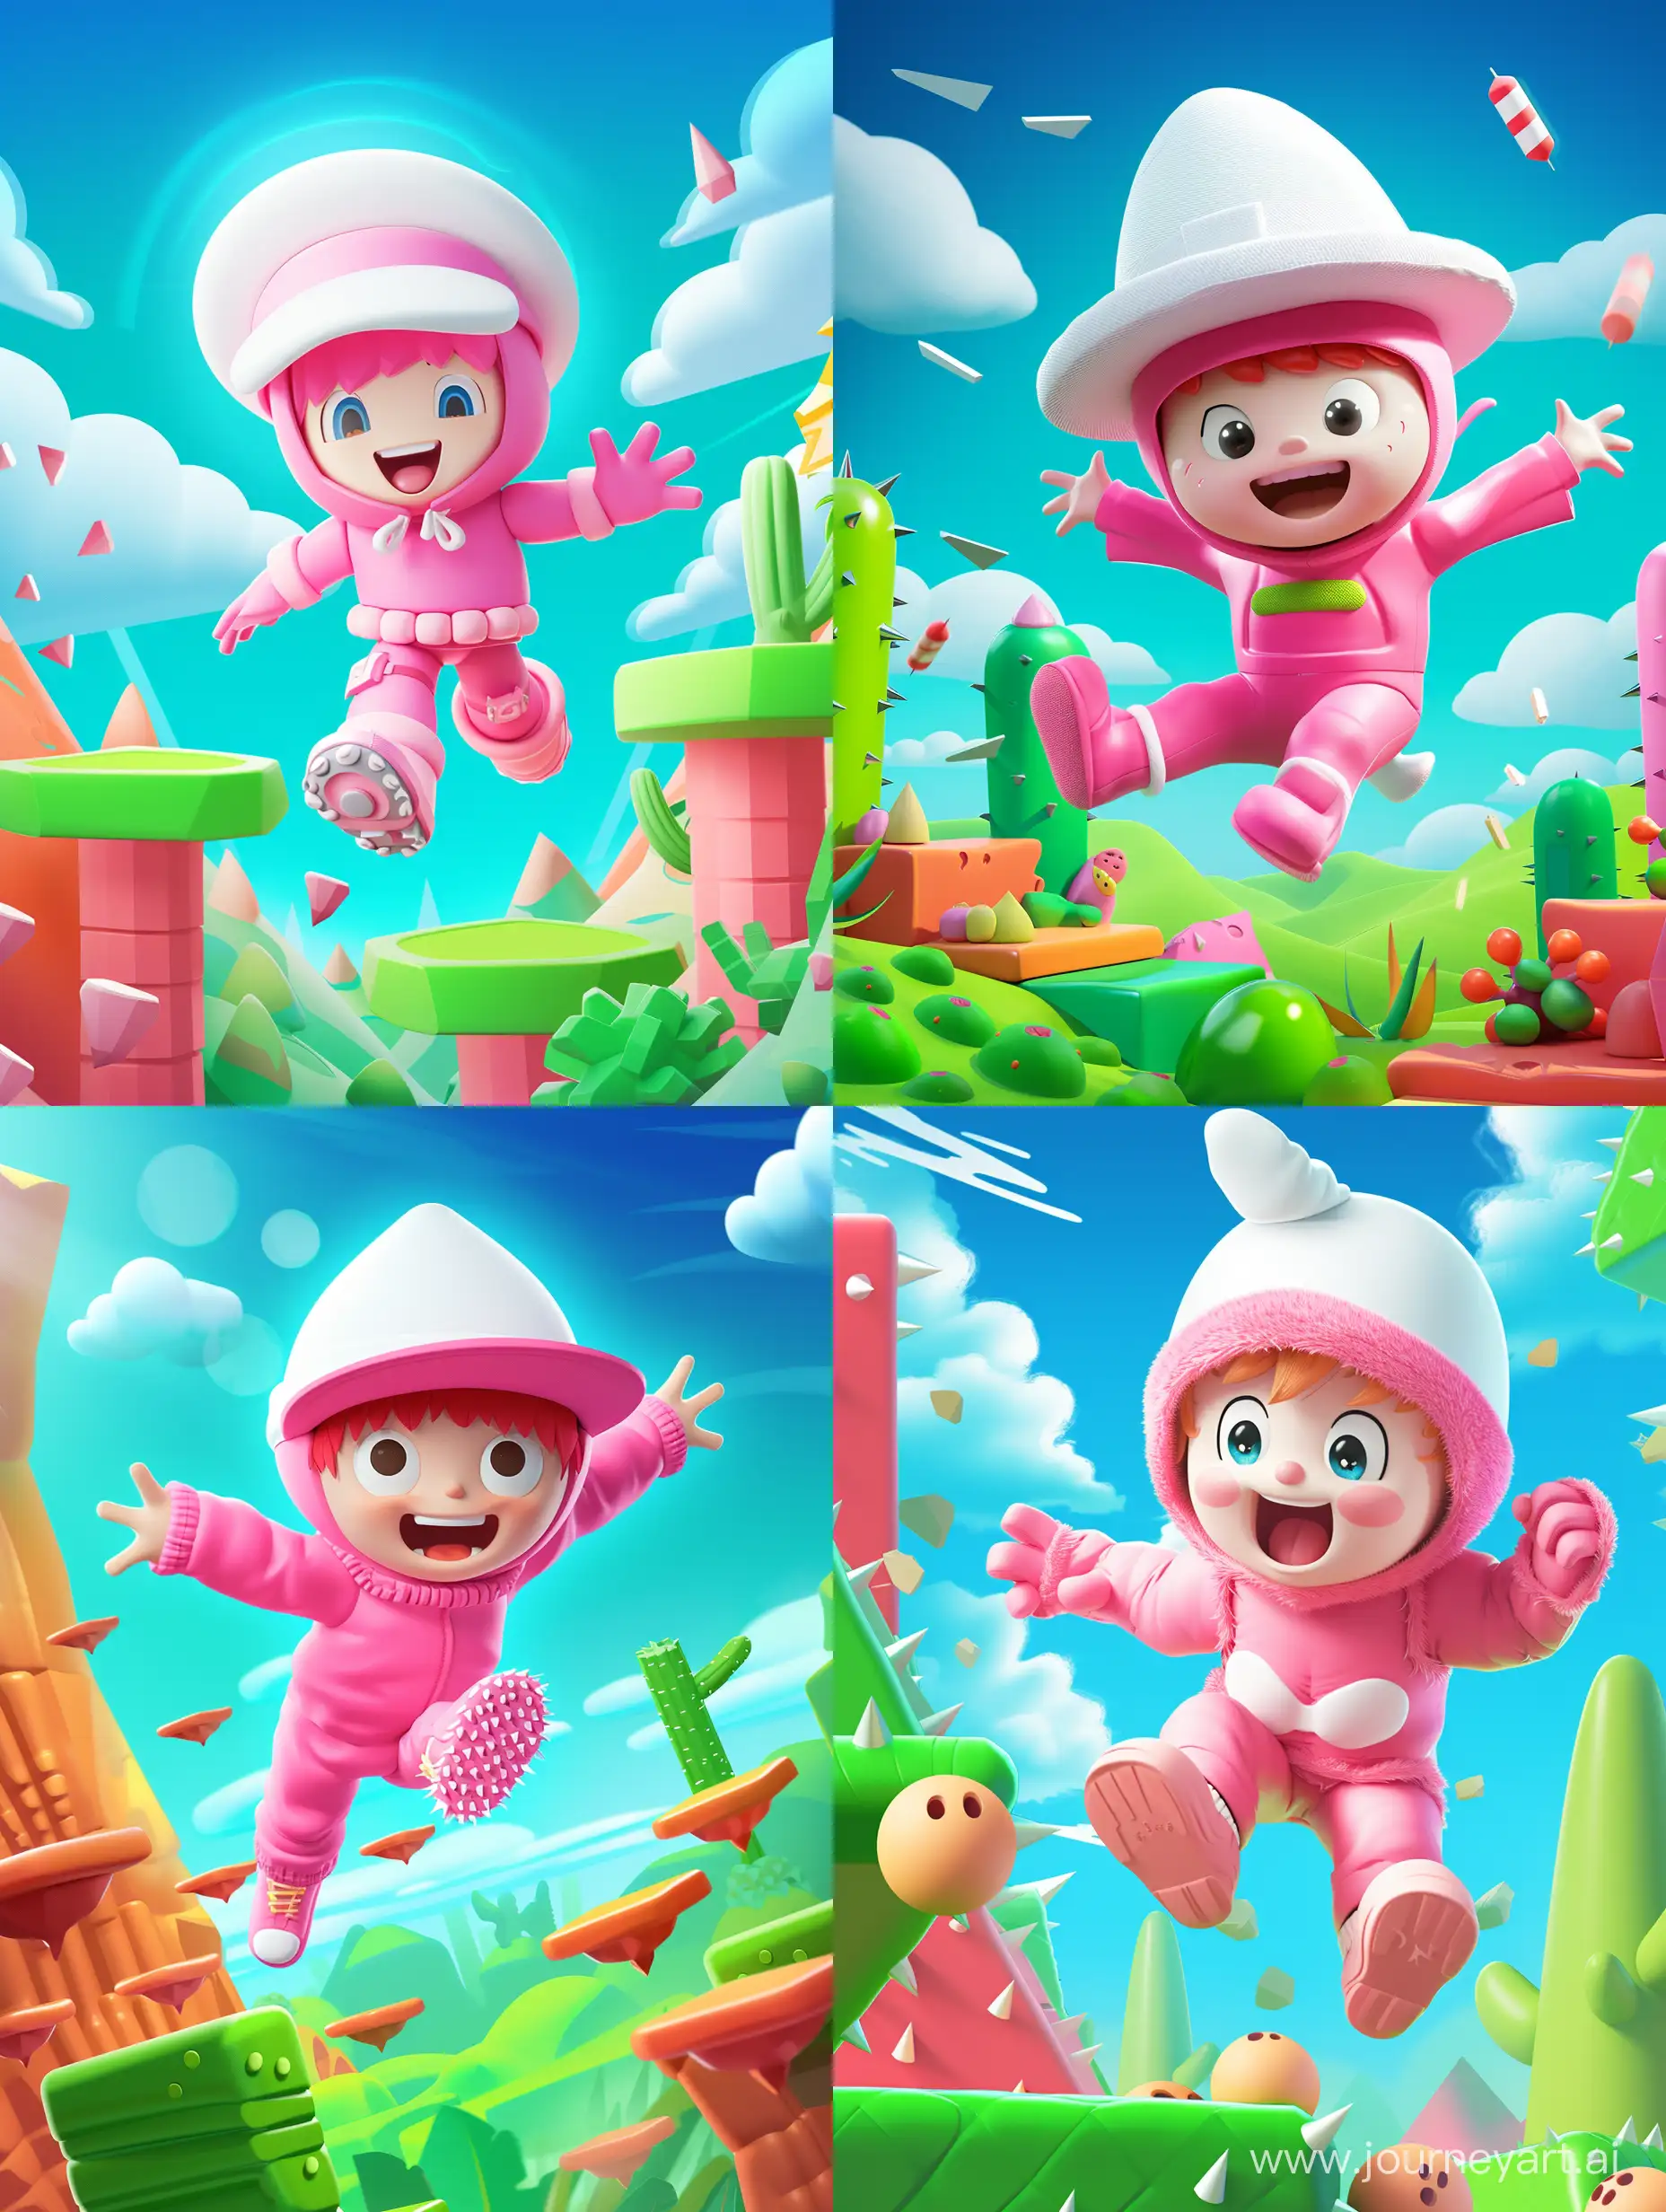 2d, розовый мальчик, платформы, прыгать, весело, препядствия, белая шапка, розовый костюм, финиш, зеленый фон, шипы, синее небо, облака